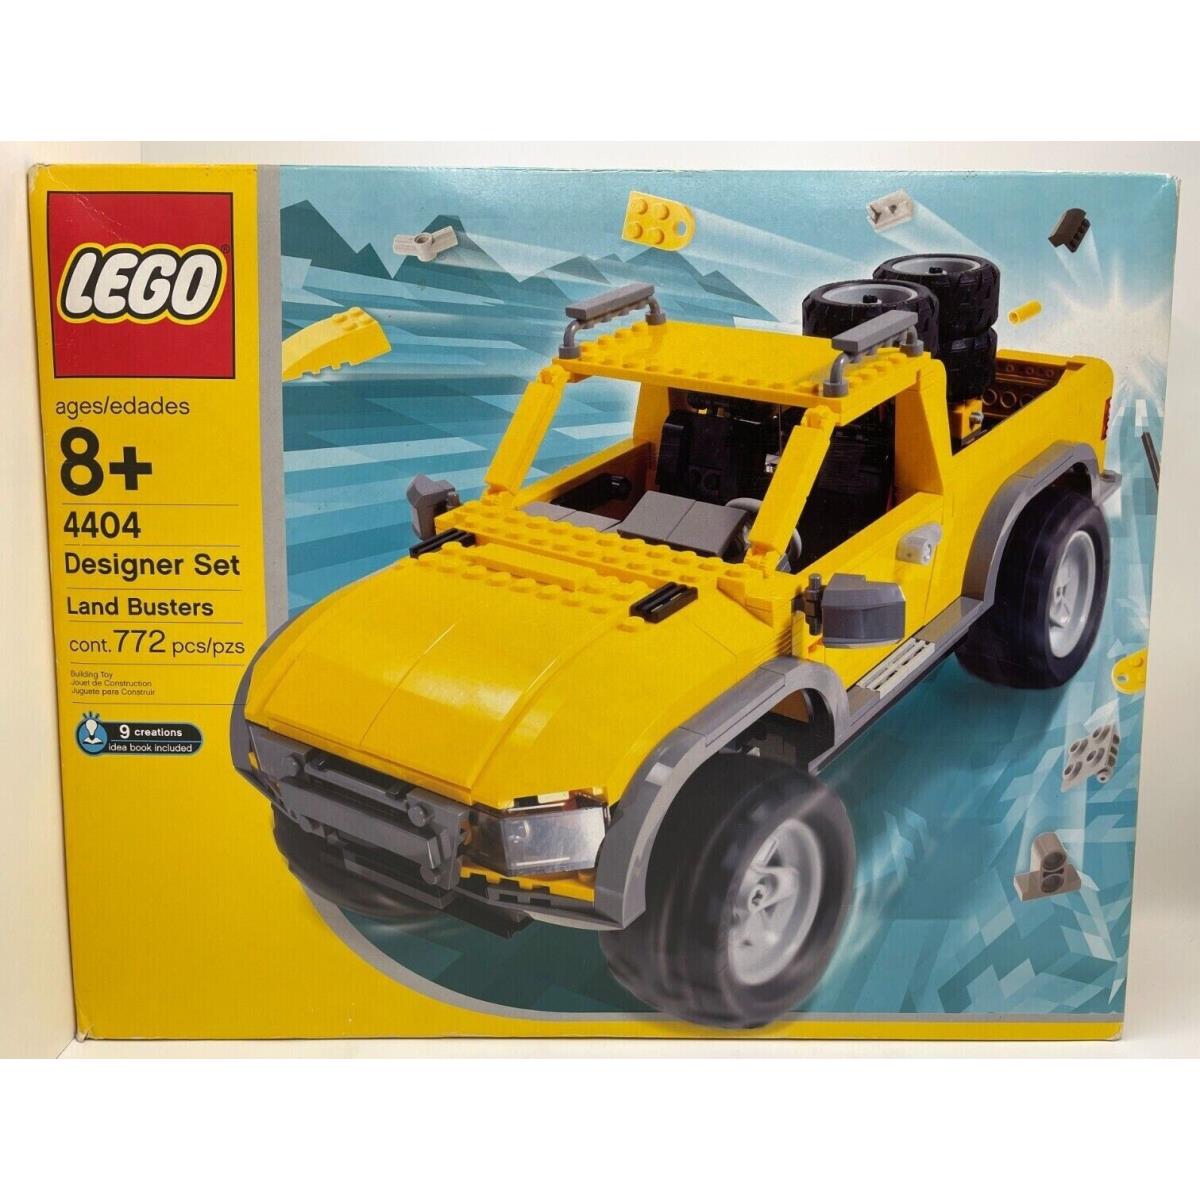 Lego 4404 Designer Set Land Busters Truck Building Toy Set